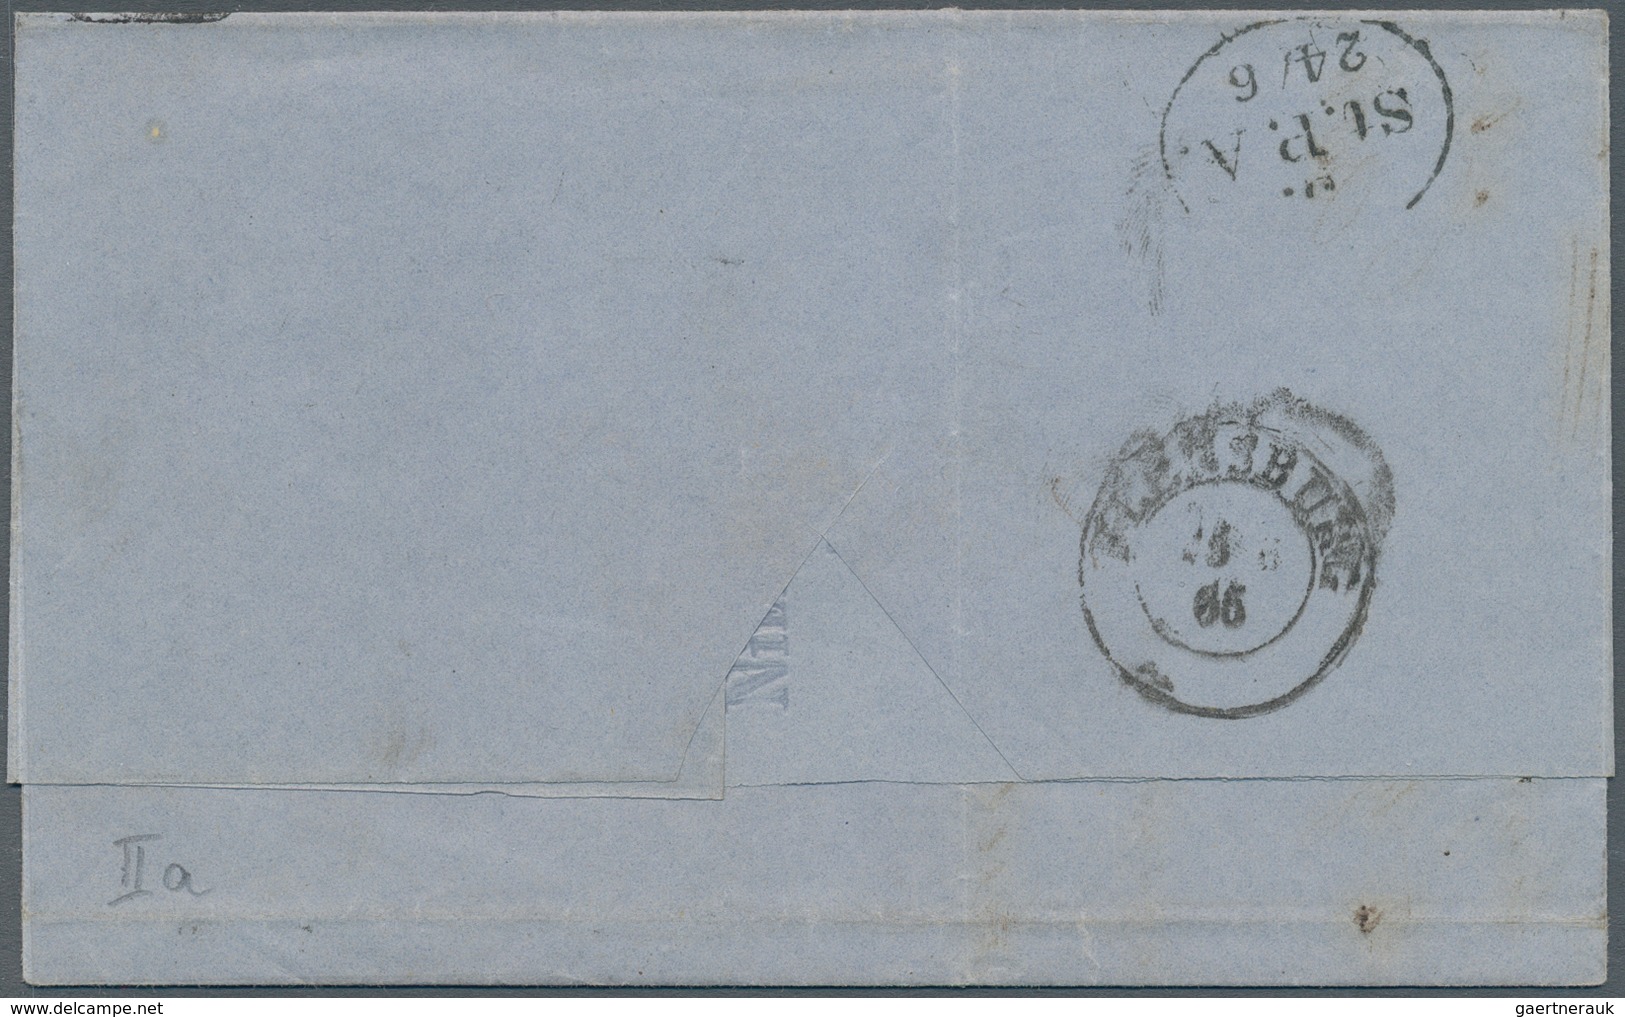 Hamburg - Marken und Briefe: 1864, Fünf Pracht/Kabinett-Briefe vom dänischen Postamt mit 1¼ S, dabei